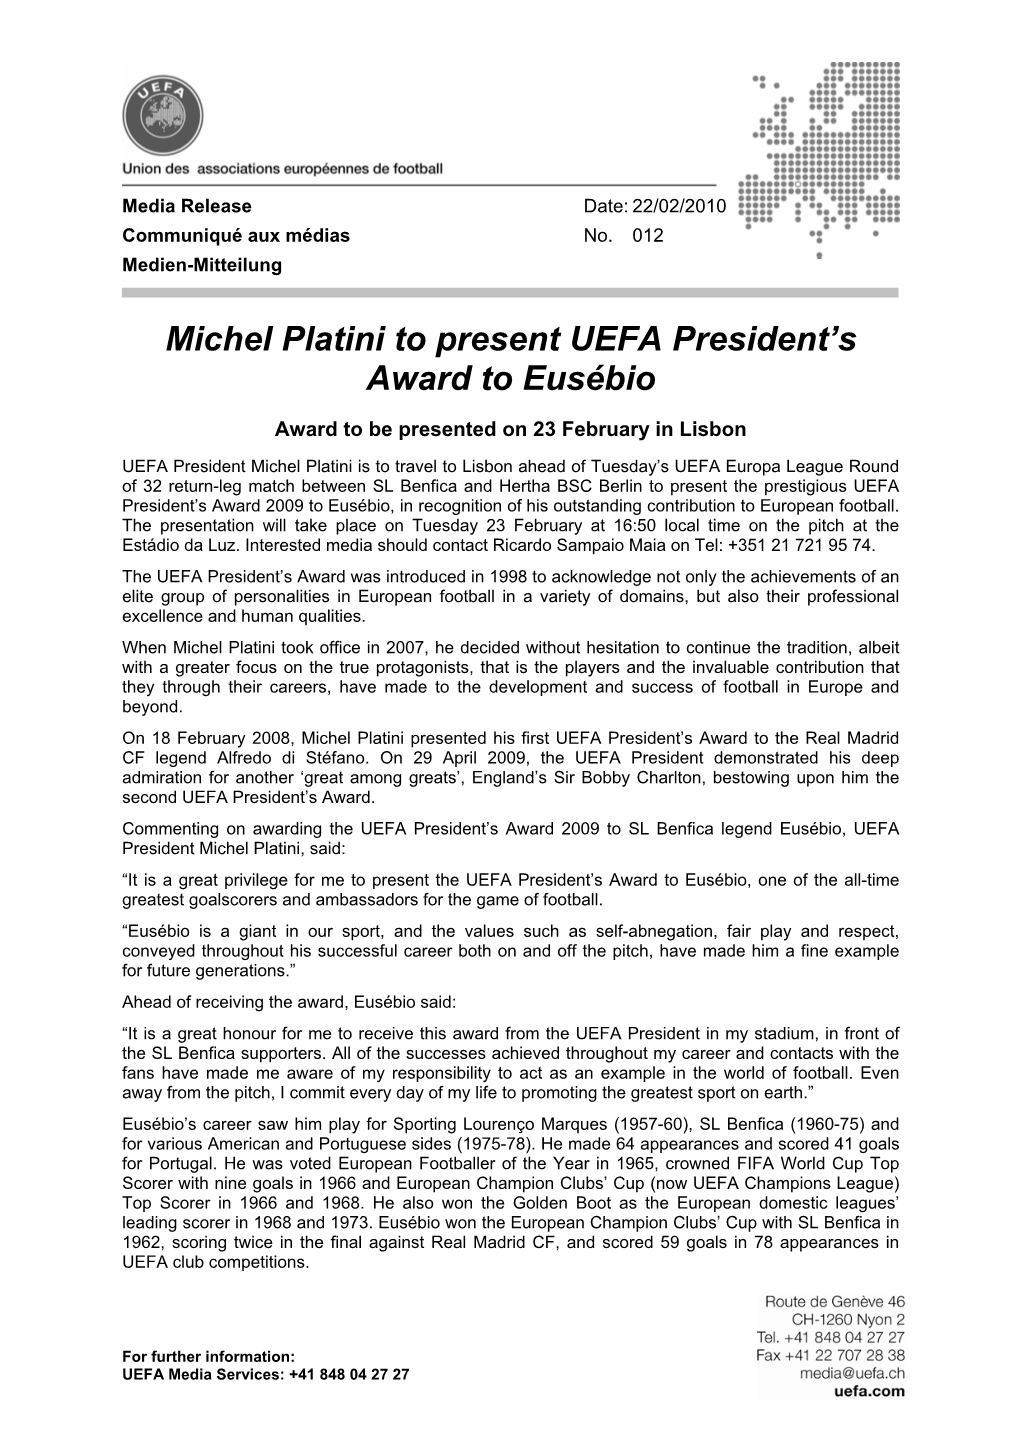 Michel Platini to Present UEFA President's Award to Eusébio